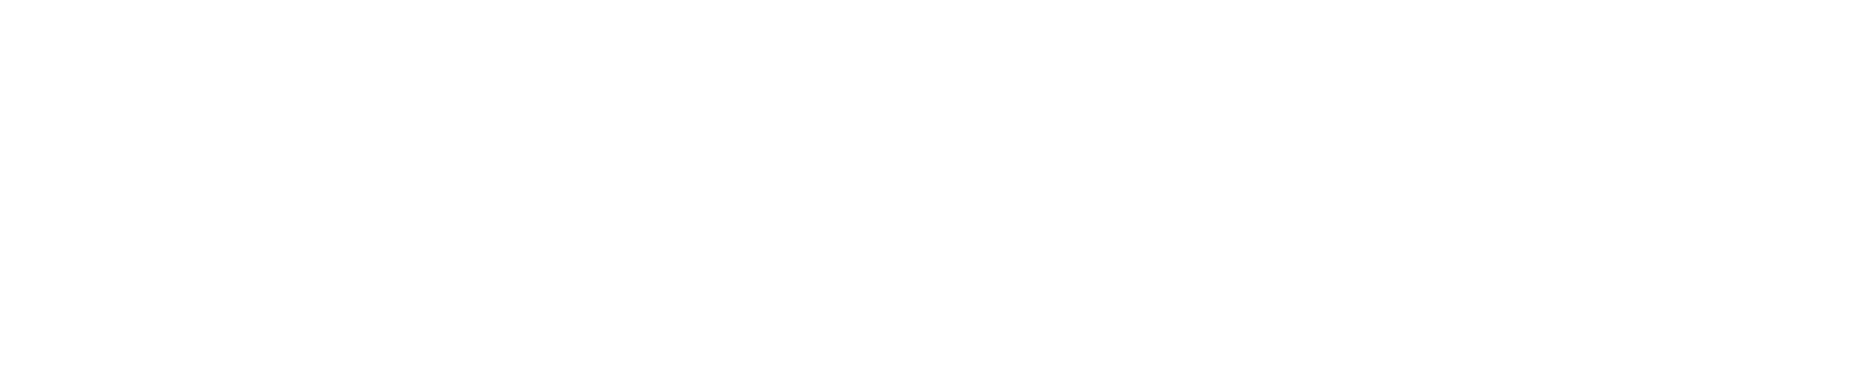 BOAT RACE 公式Youtubeチャンネル